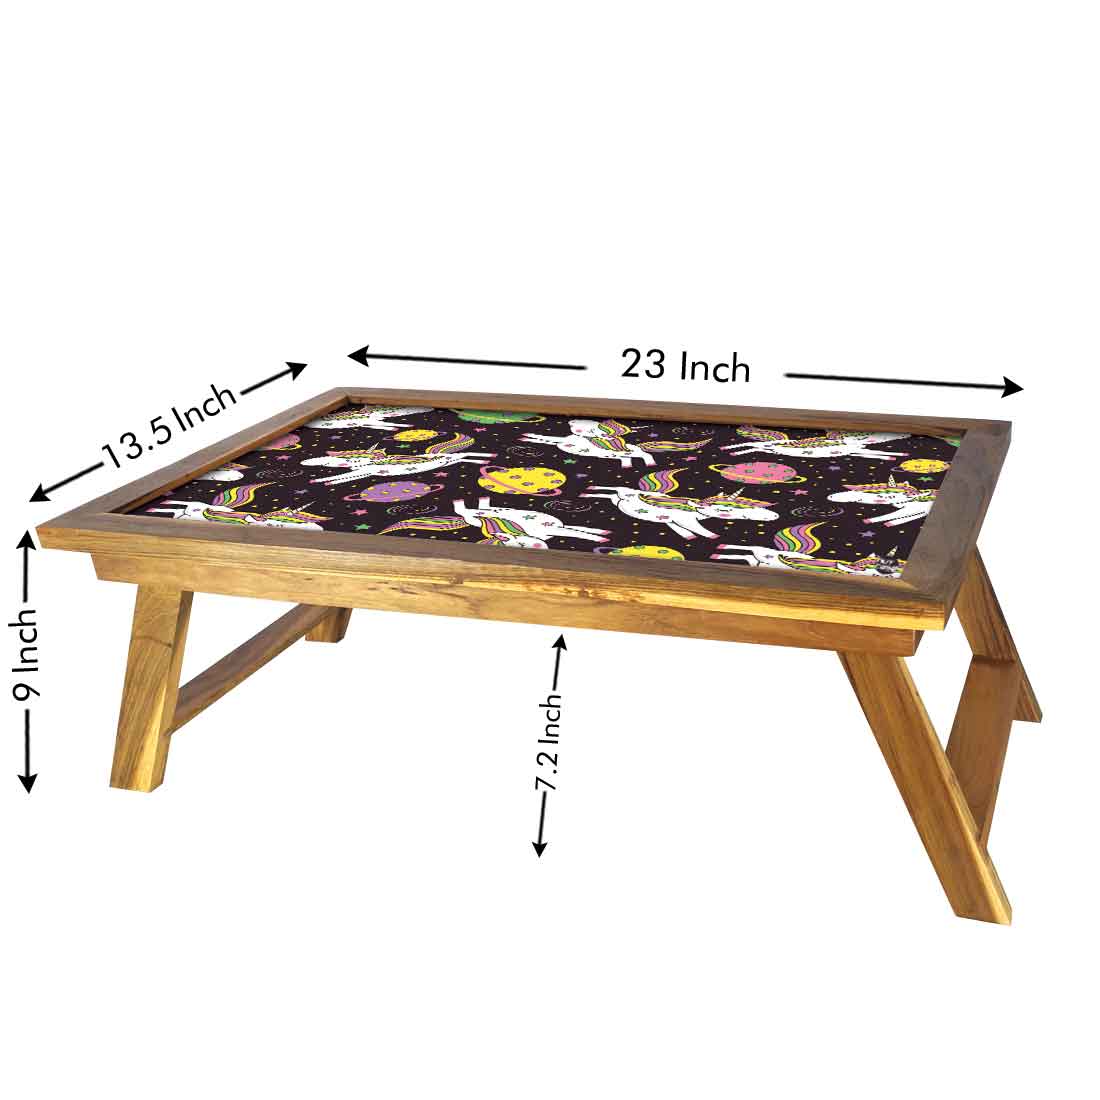 Folding Designer Wooden Breakfast Table for Children - Unicorn Space Nutcase